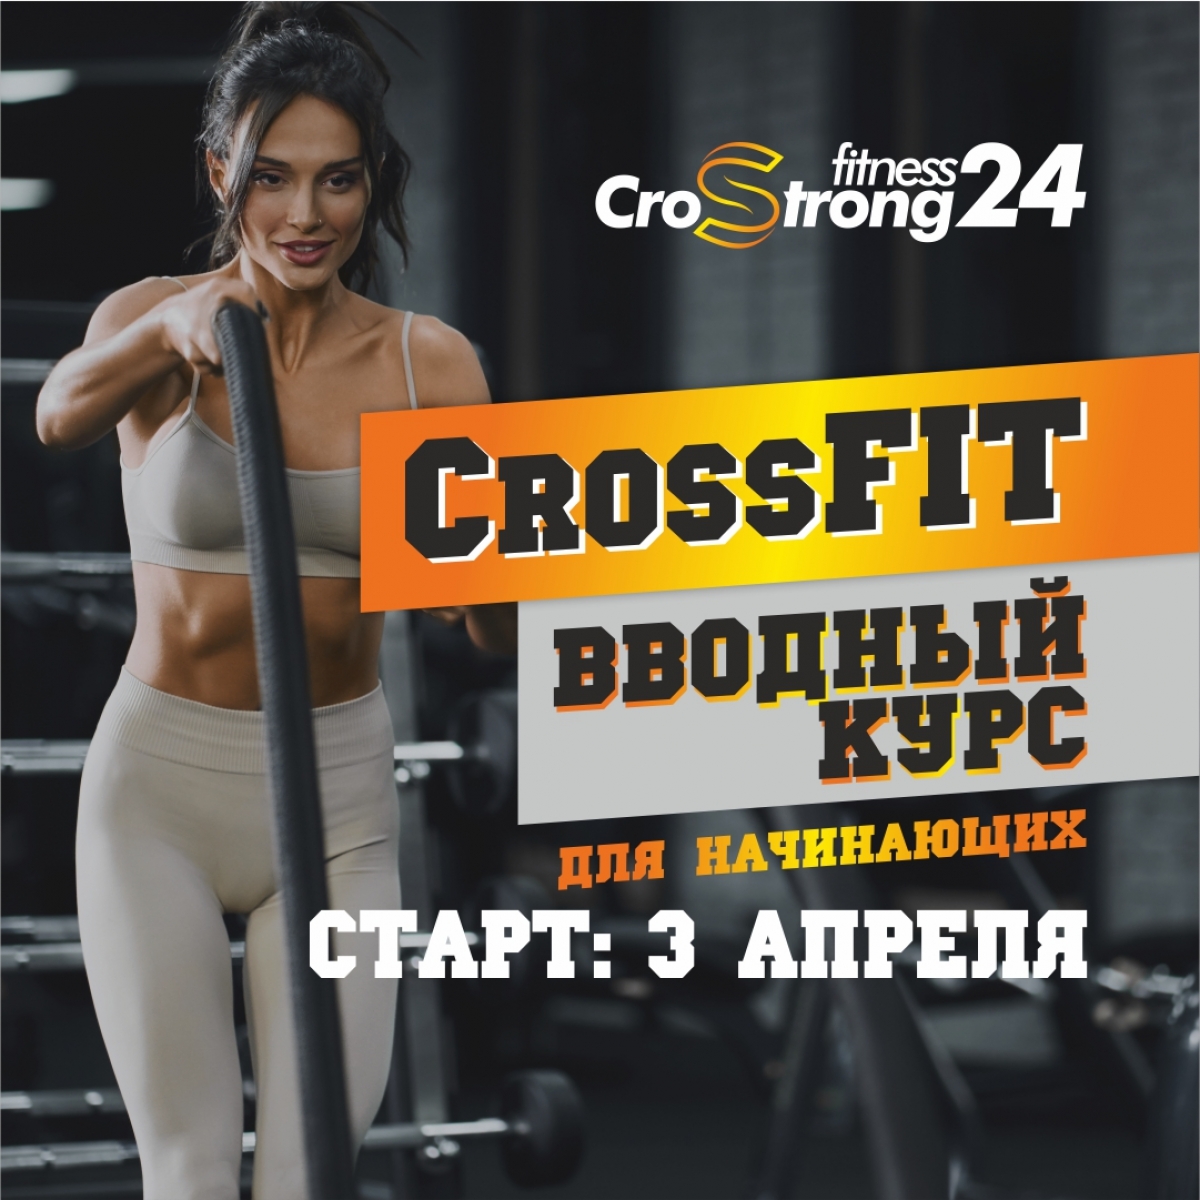 Новый Старт! CrossFIT: вводный курс для начинающих